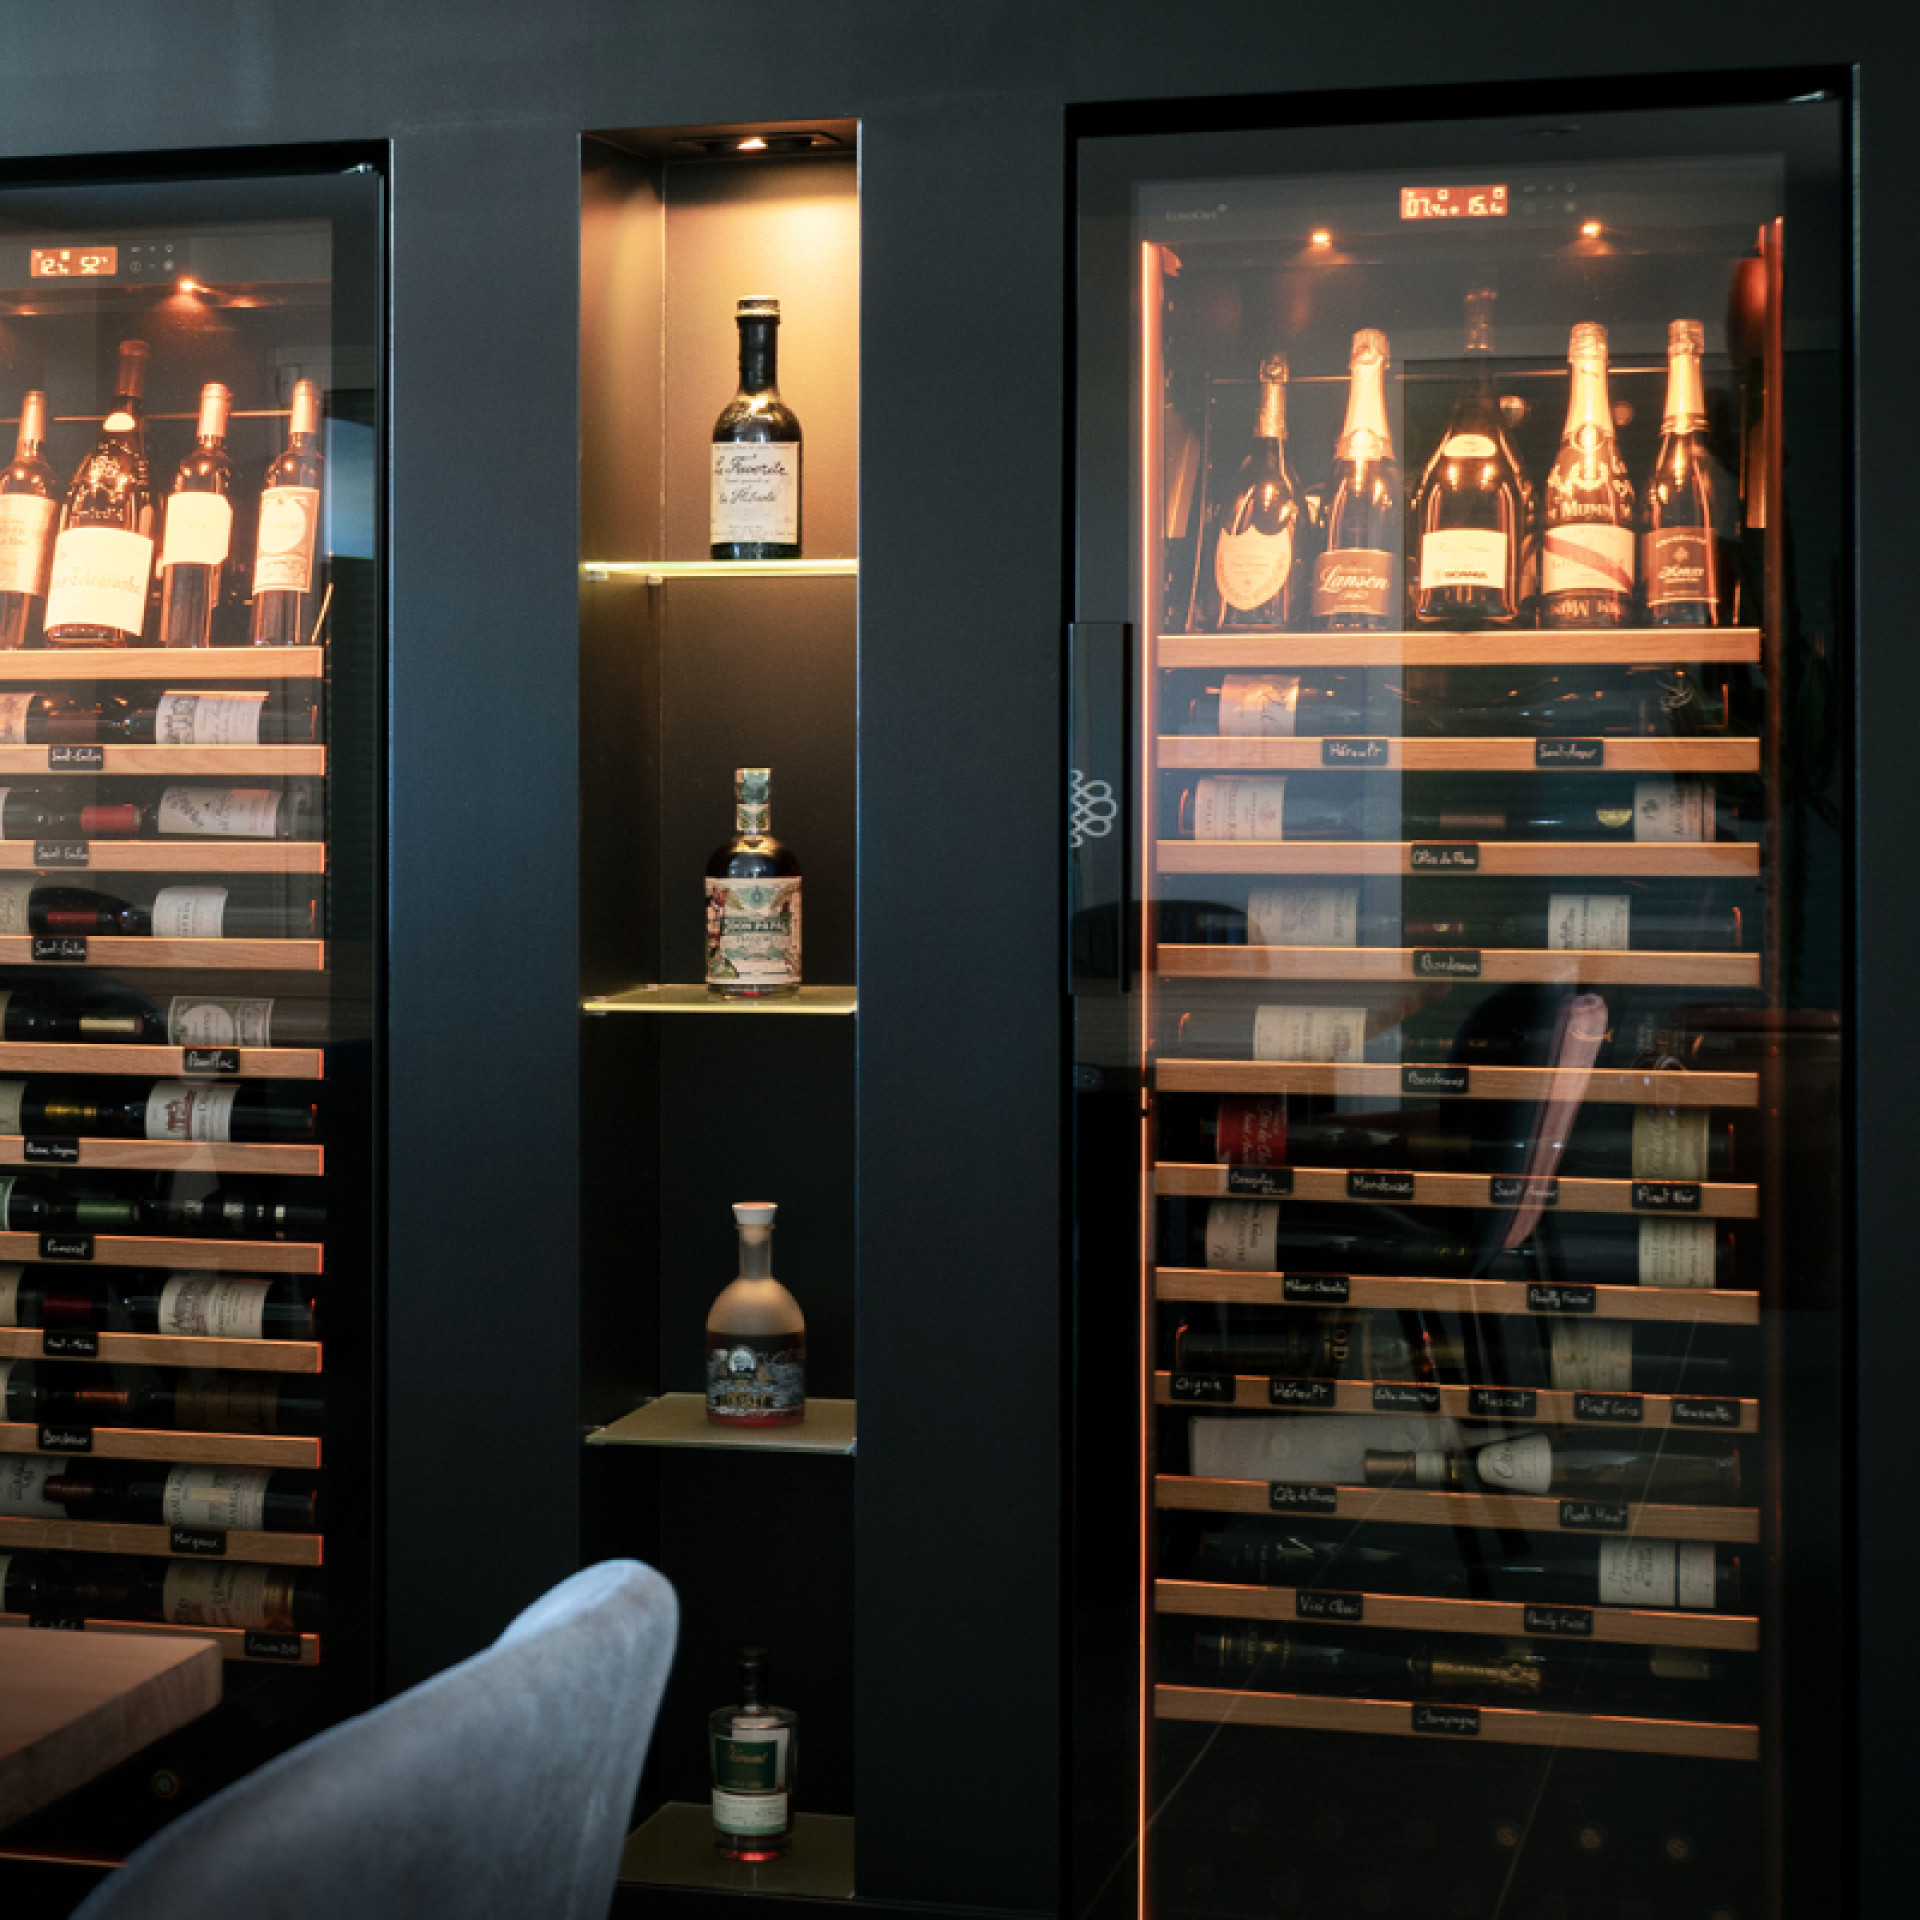 Caves à vin professionnelles avec options premium, encastrées dans une niche dans le mur, avec une belle mise en lumière de bouteilles dans l'armoire.